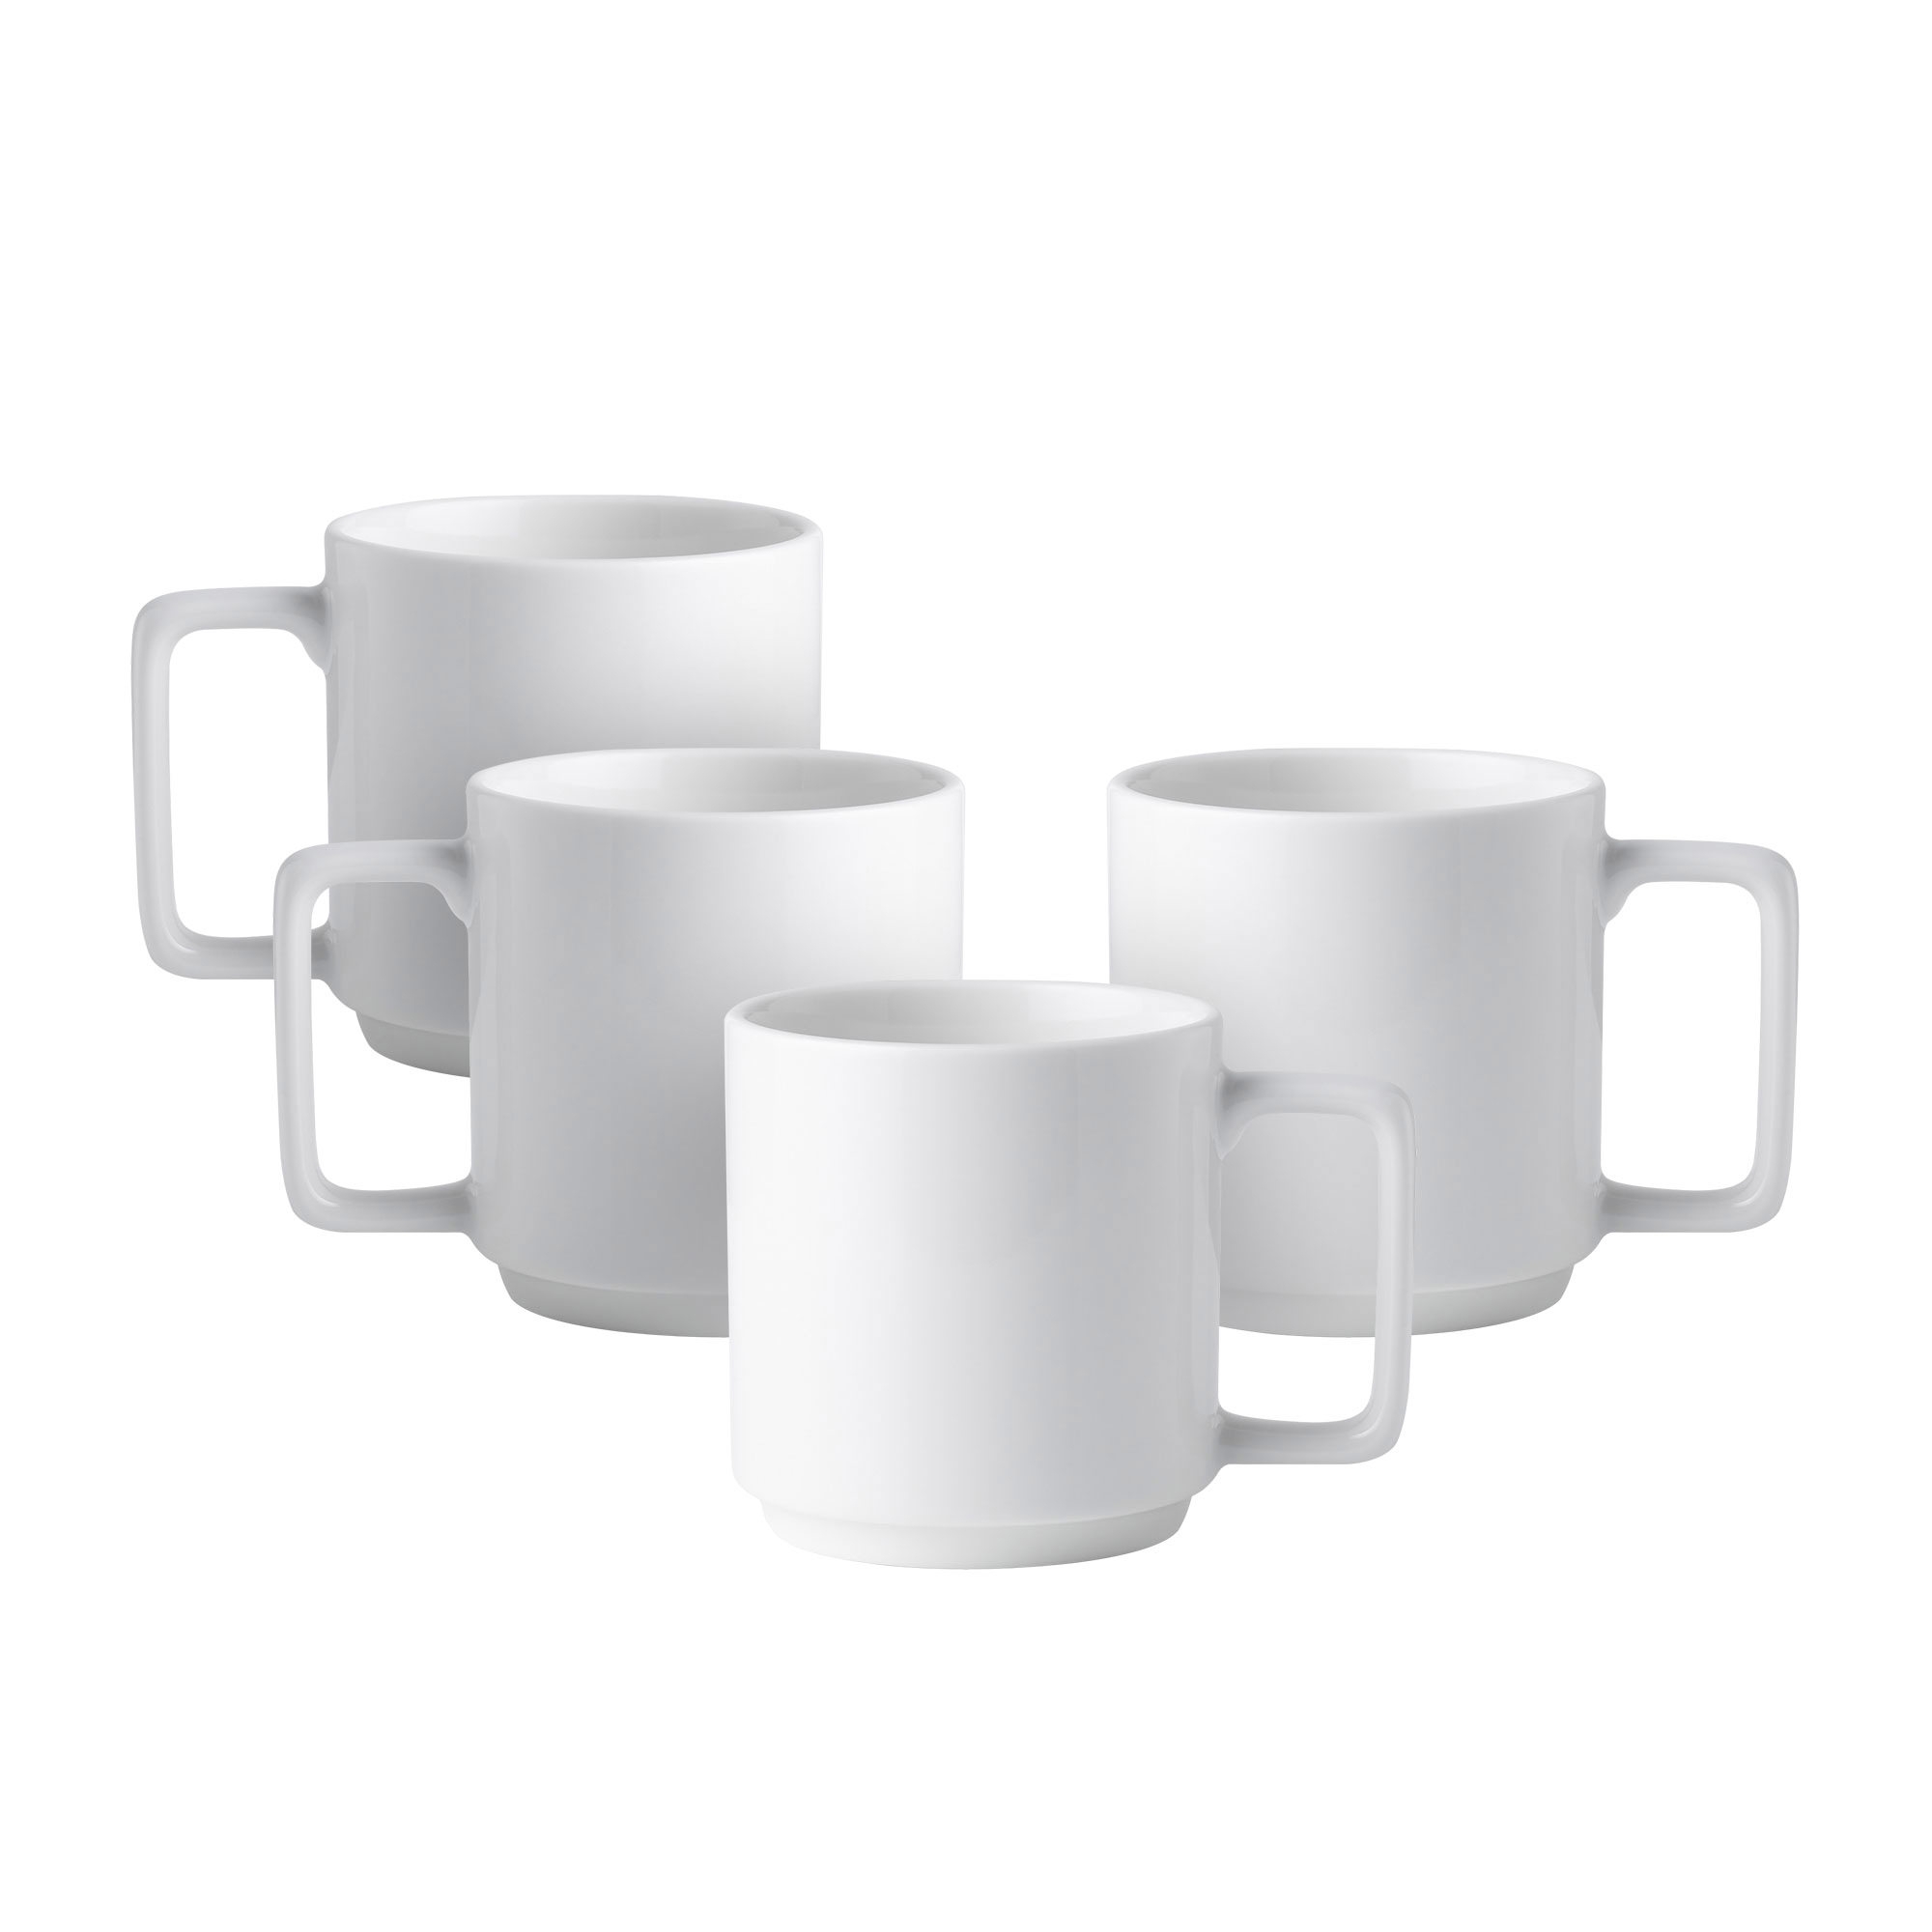 Noritake Stax White Mug 450ml Set of 4 Image 1